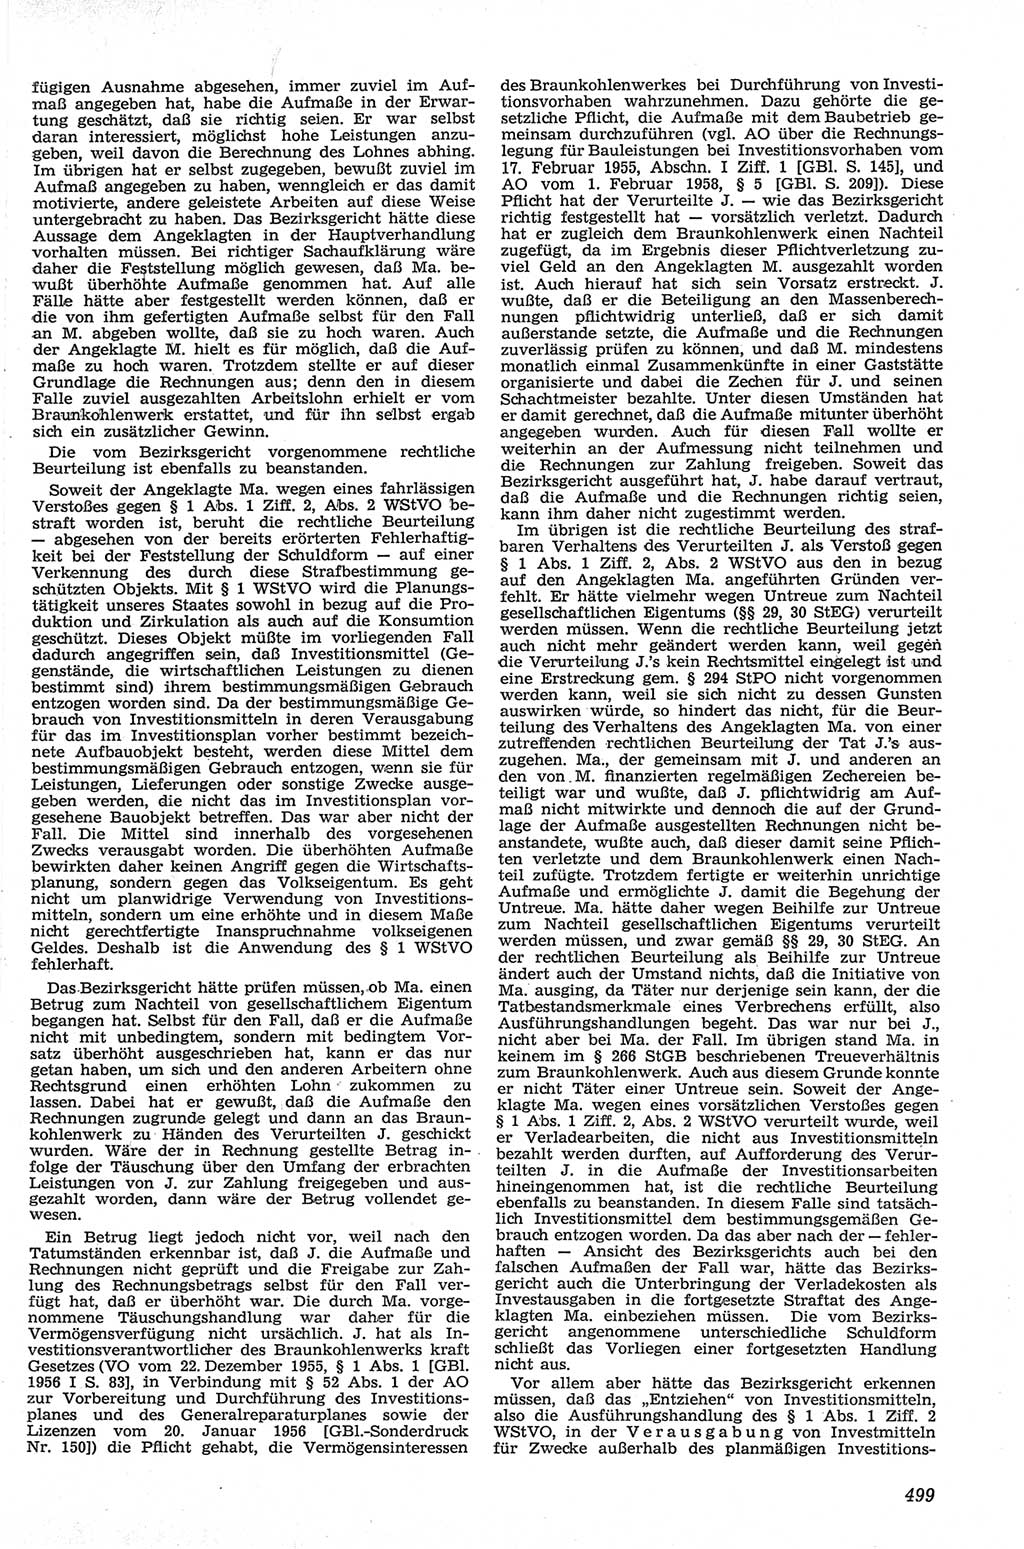 Neue Justiz (NJ), Zeitschrift für Recht und Rechtswissenschaft [Deutsche Demokratische Republik (DDR)], 13. Jahrgang 1959, Seite 499 (NJ DDR 1959, S. 499)